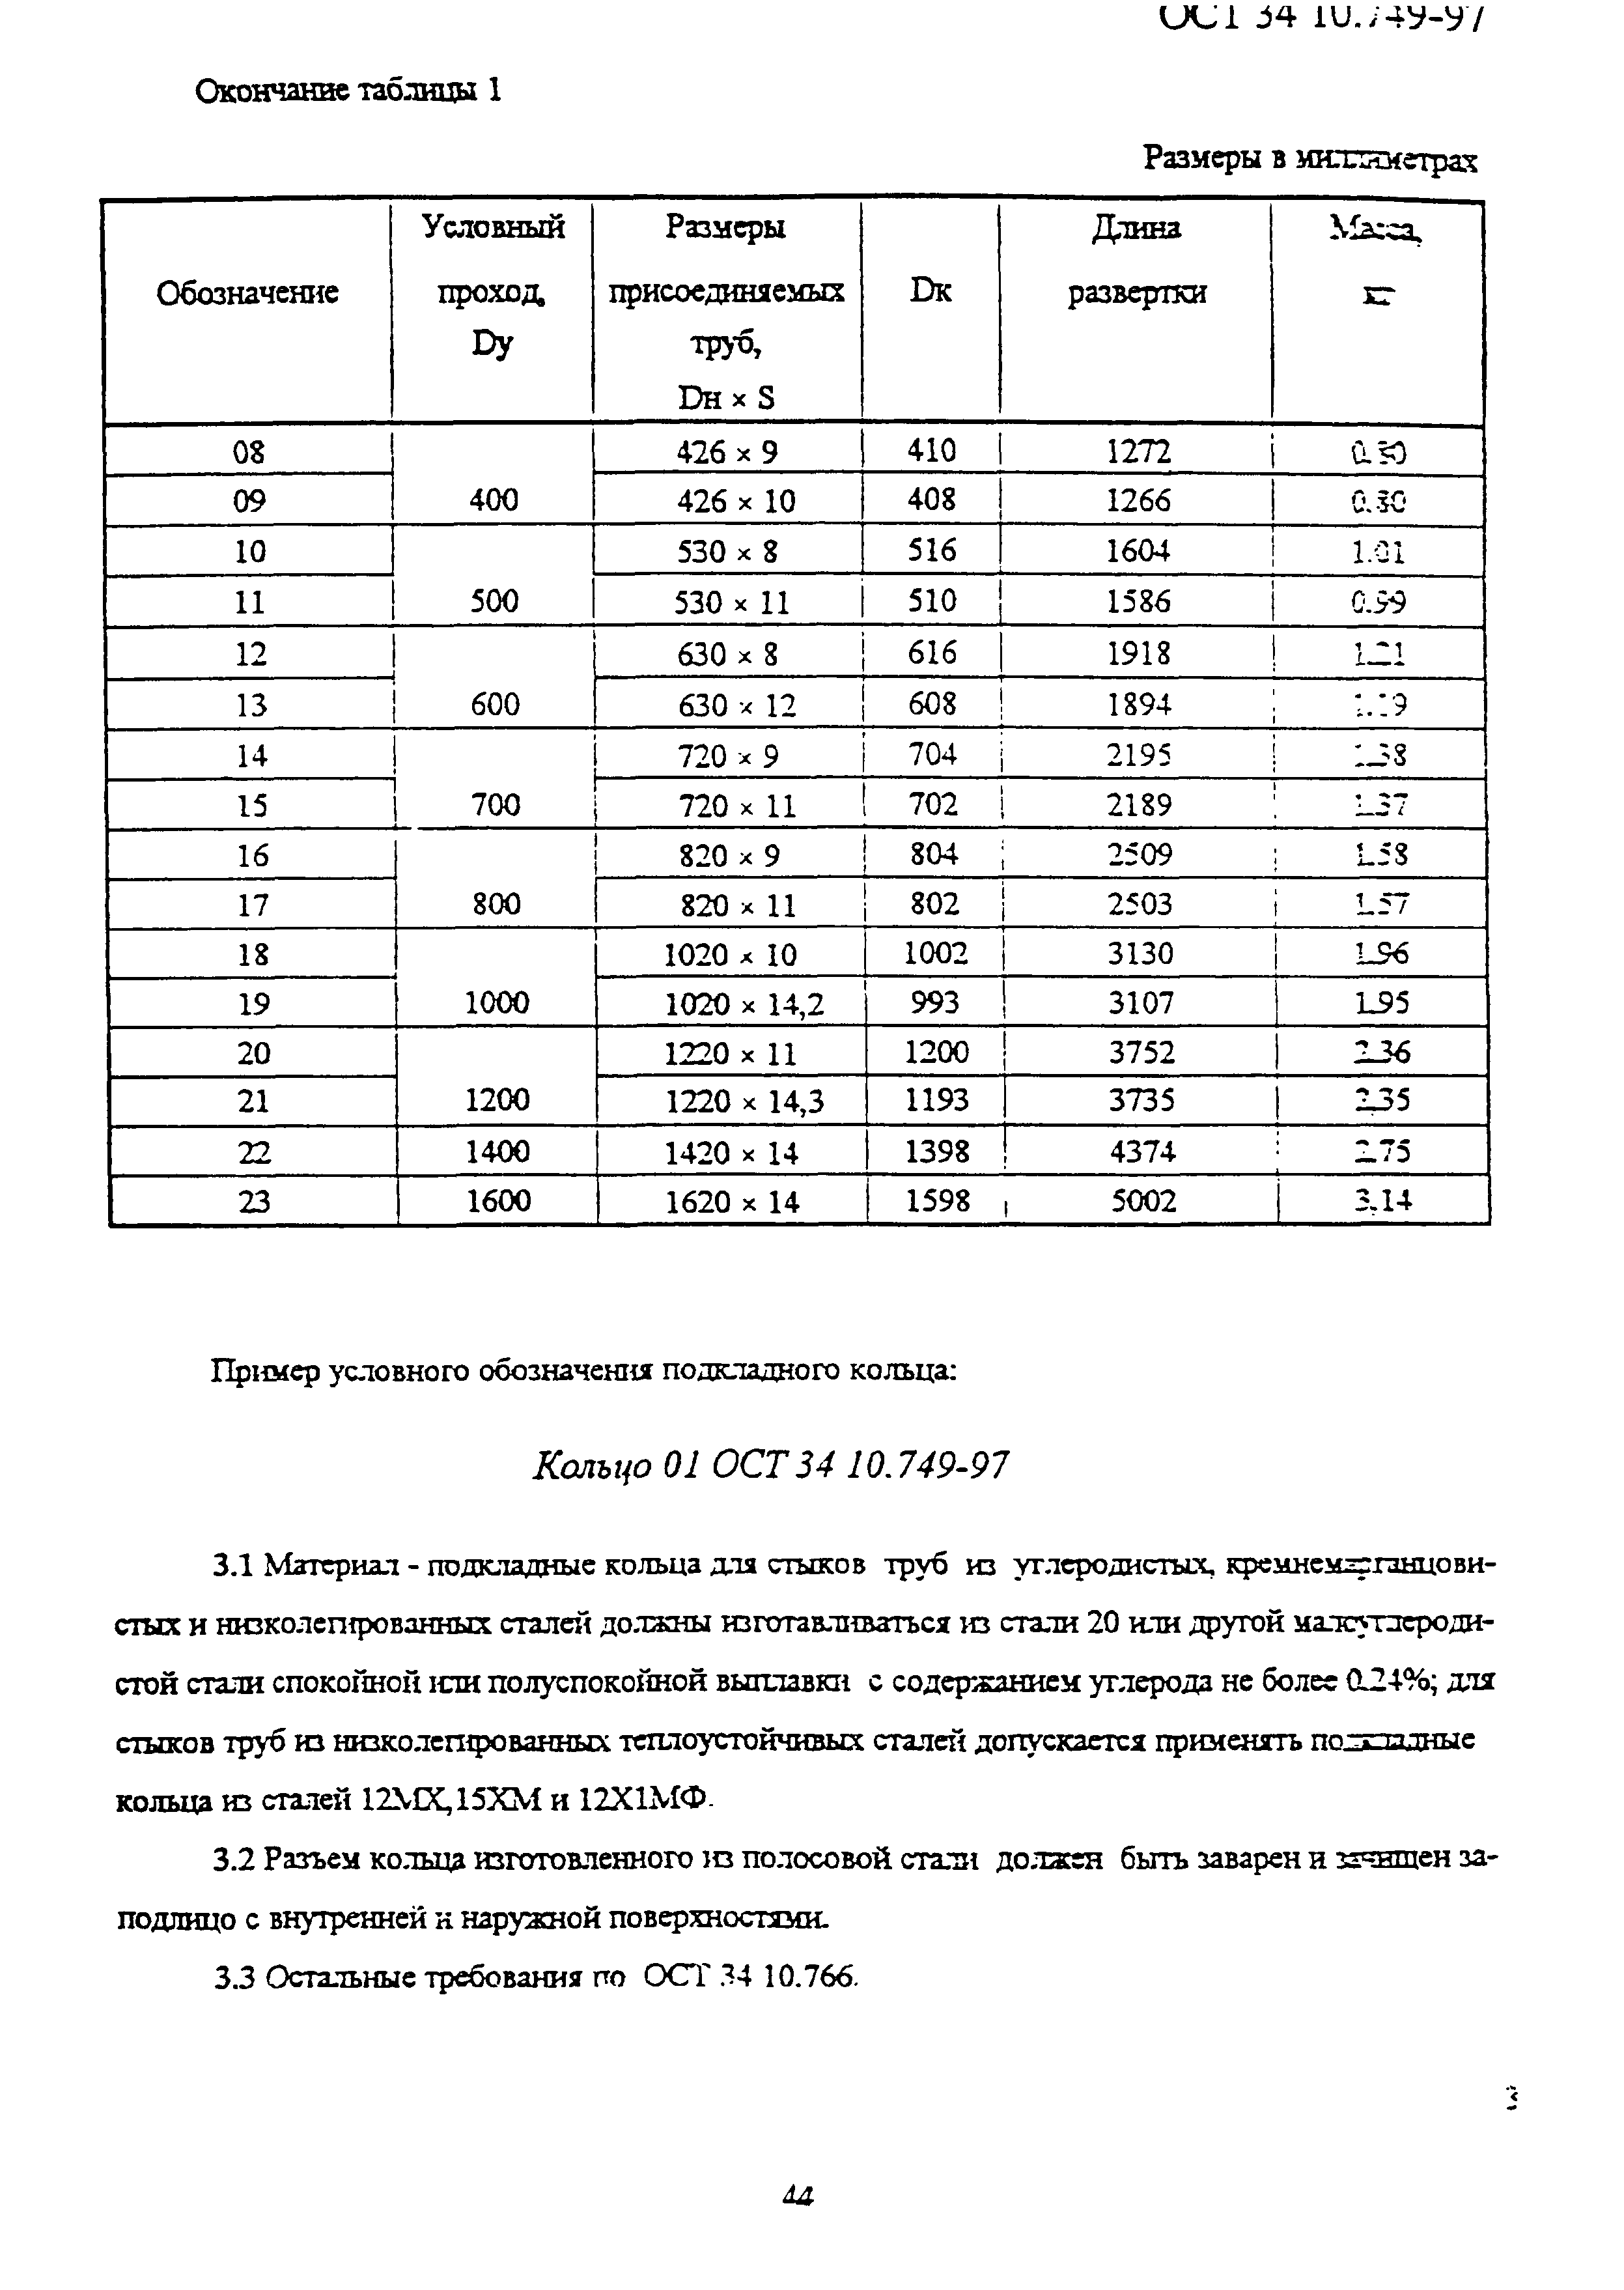 ОСТ 34-10.749-97